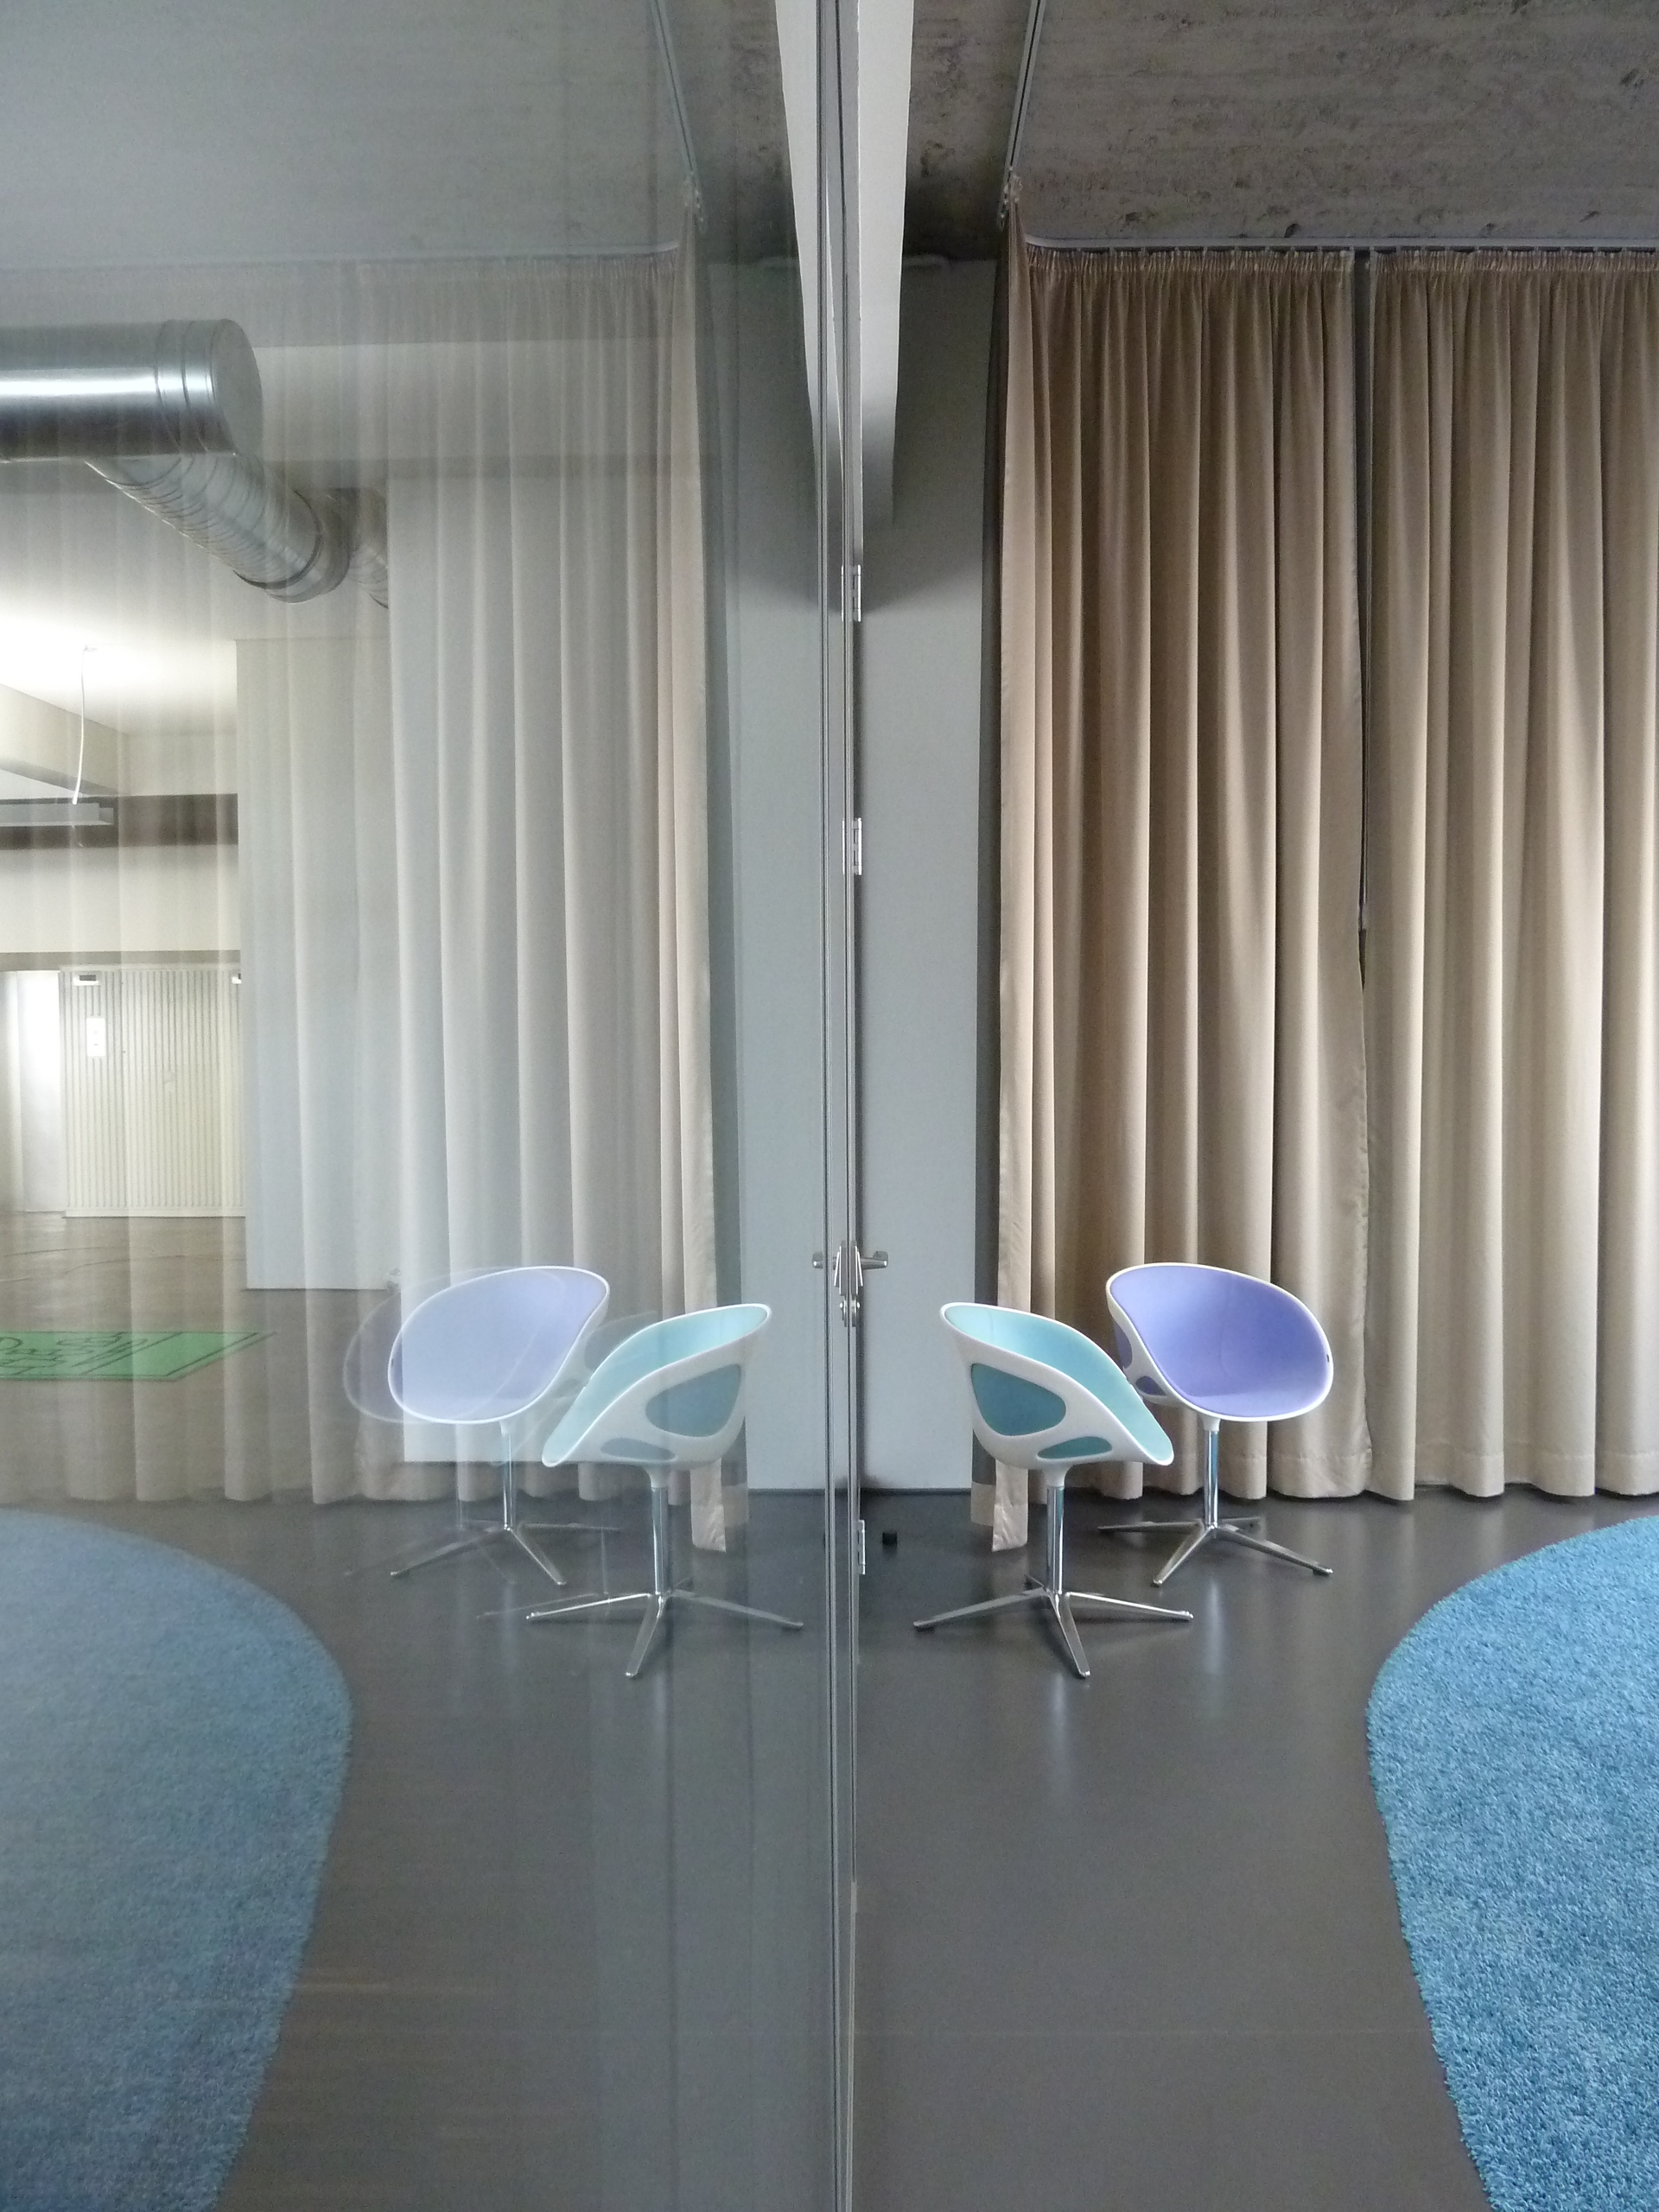 kaller und kaller, sample office, office, meeting, room, interior, carpet, light